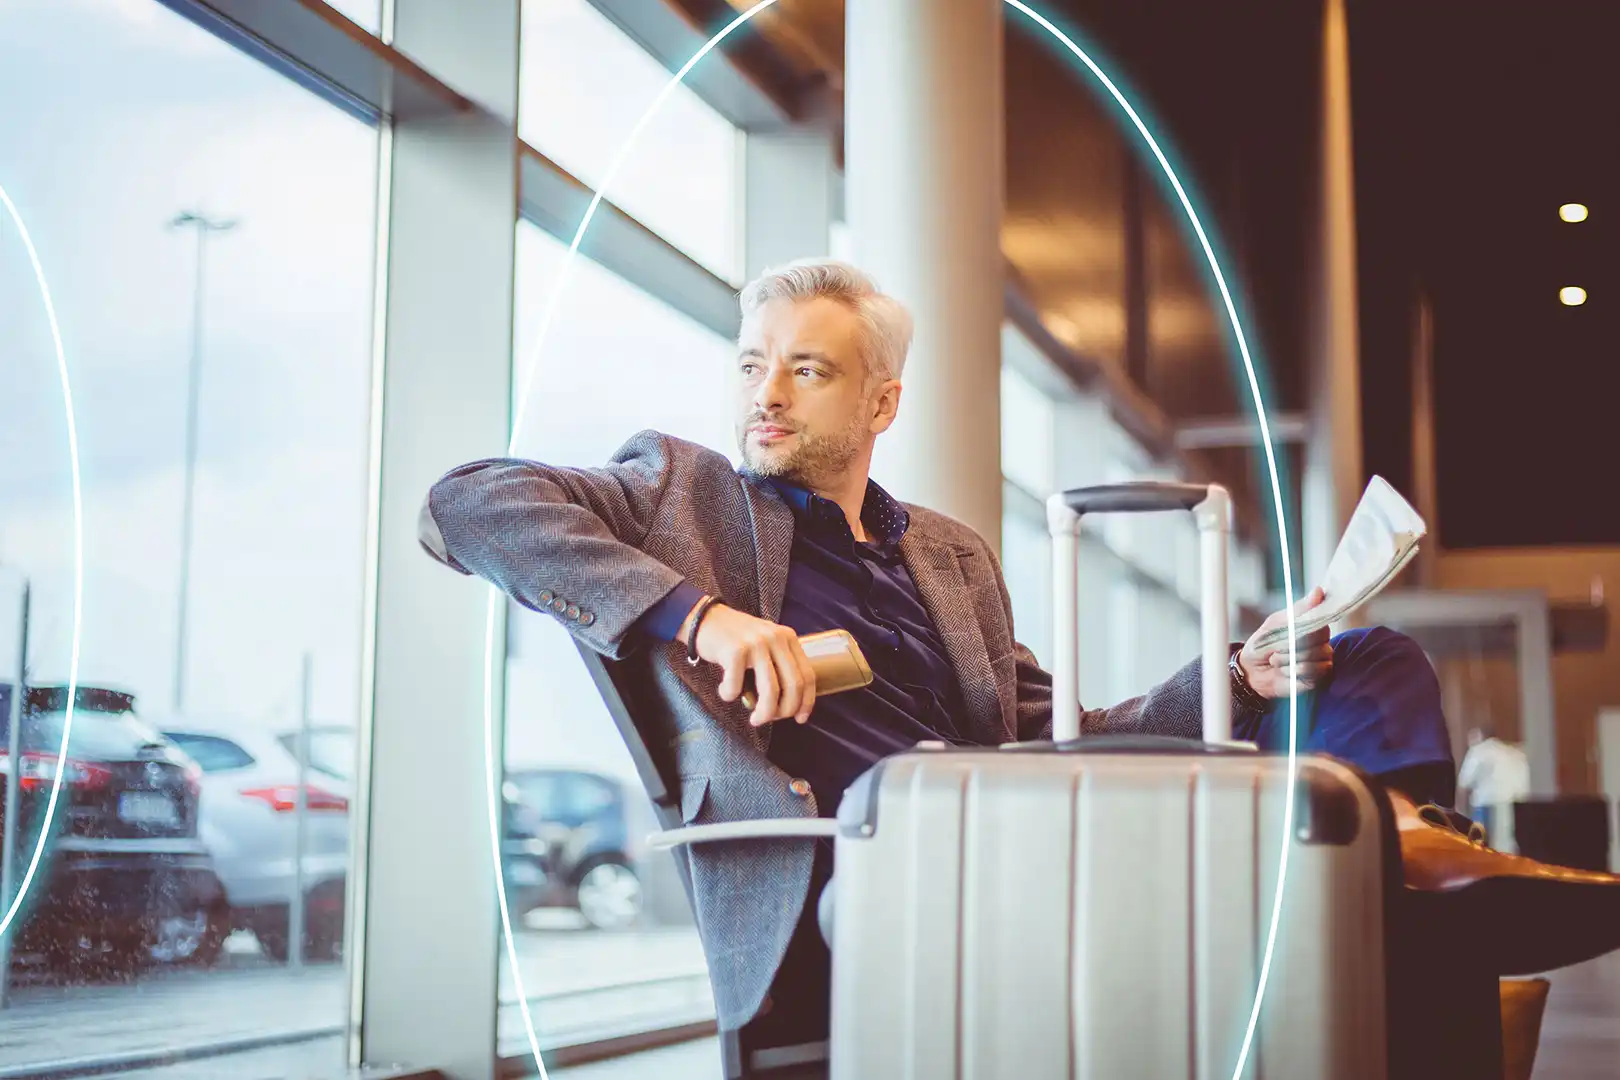 Ondernemer kijkt uit het raam van het vliegveld en denkt na over de verkoop van zijn bedrijf | About IMAP